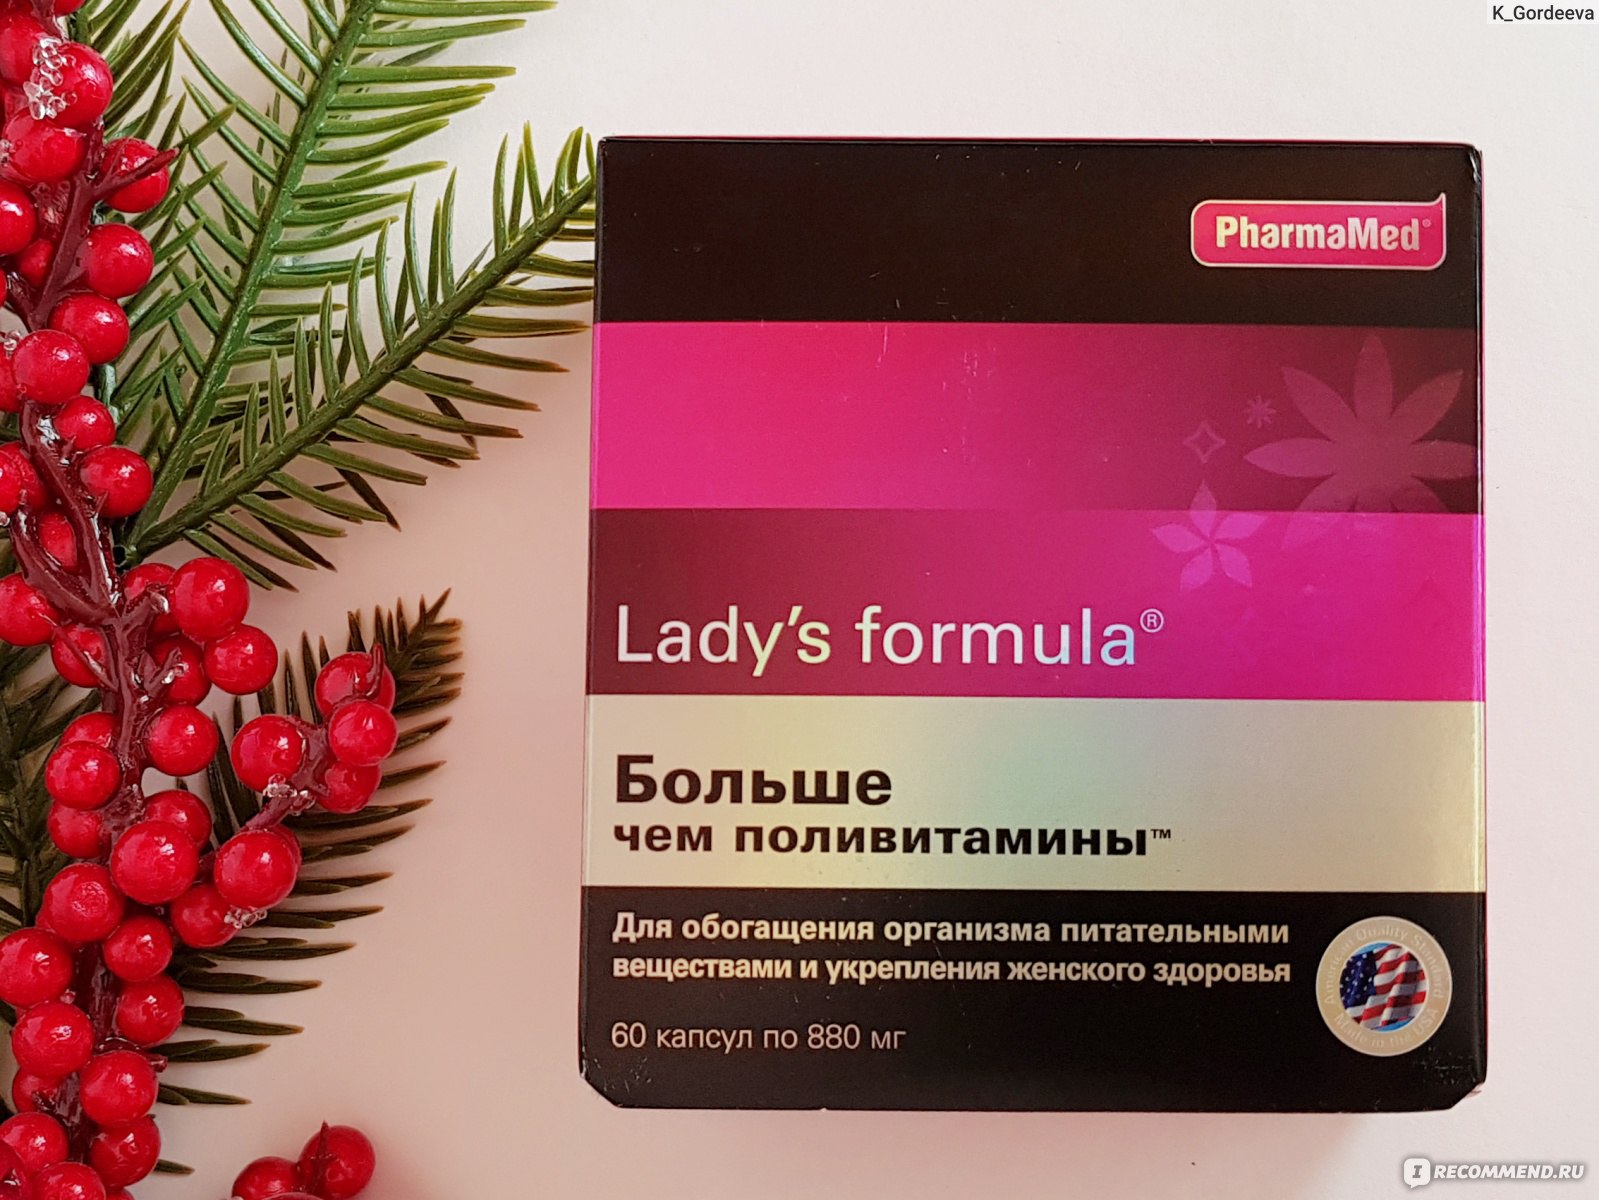 Поливитамины lady's formula отзывы. БАД PHARMAMED. Lady's Formula больше чем поливитамины. Lady’s Formula «для беременных и кормящих. Lady's Formula больше чем поливитамины состав.